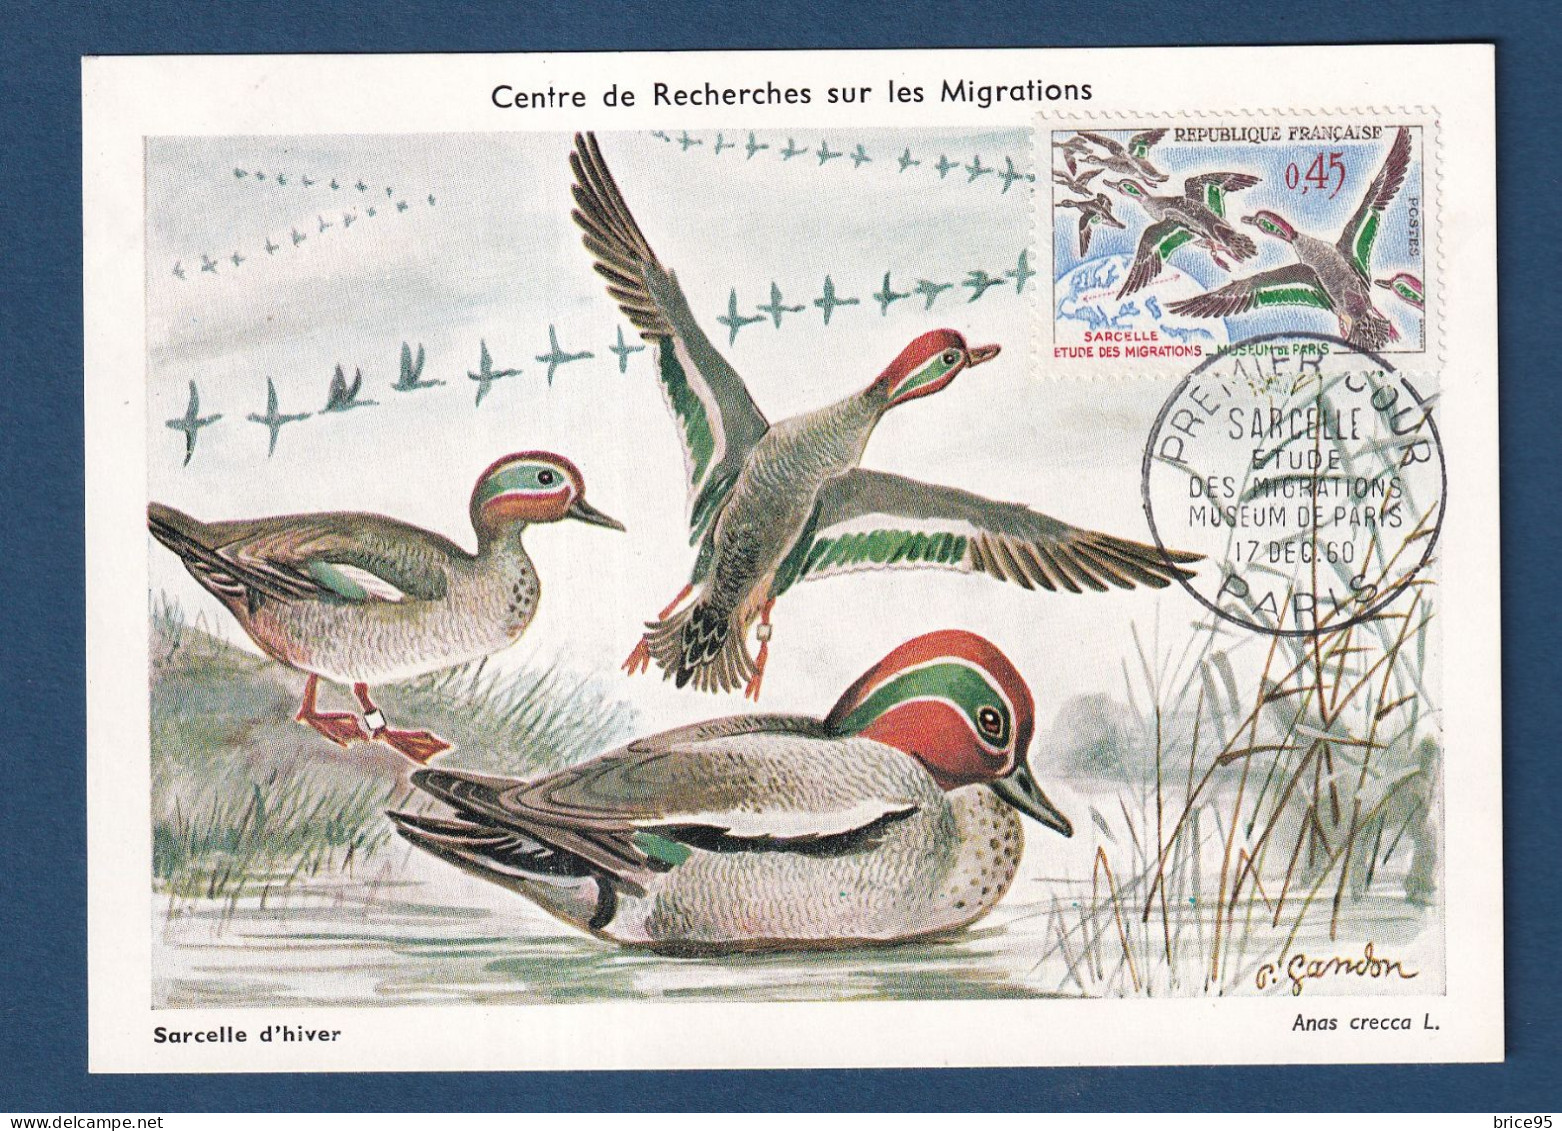 France - FDC - Premier Jour - Carte Maximum - Sarcelle - Etude Des Migrations Museum De Paris - 1960 - 1960-1969